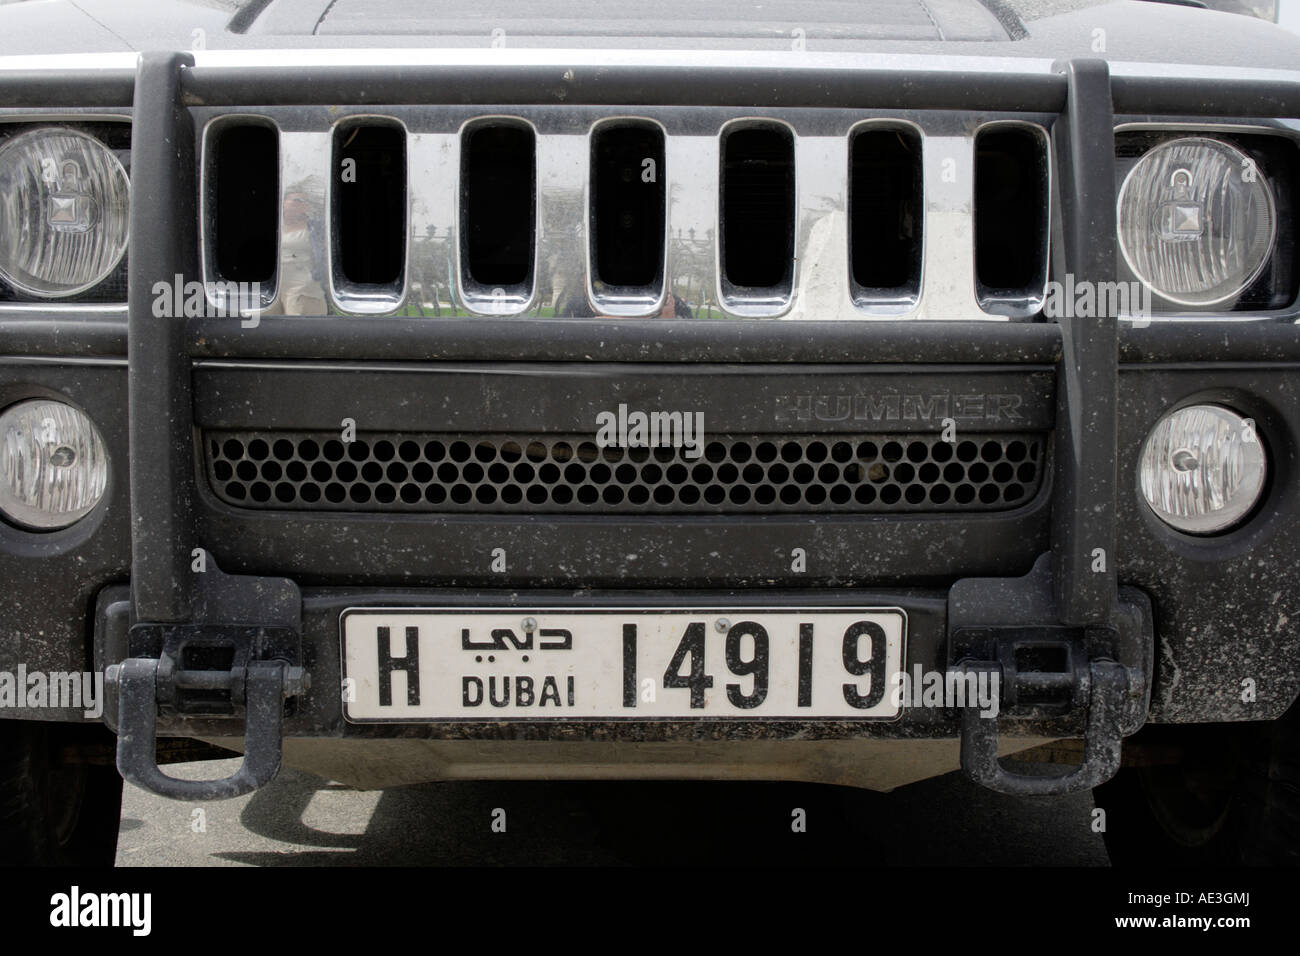 Kfz-Kennzeichen und Front eines Hummer Geländewagen, Dubai, Vereinigte Arabische Emirate. Foto: Willy Matheisl Stockfoto